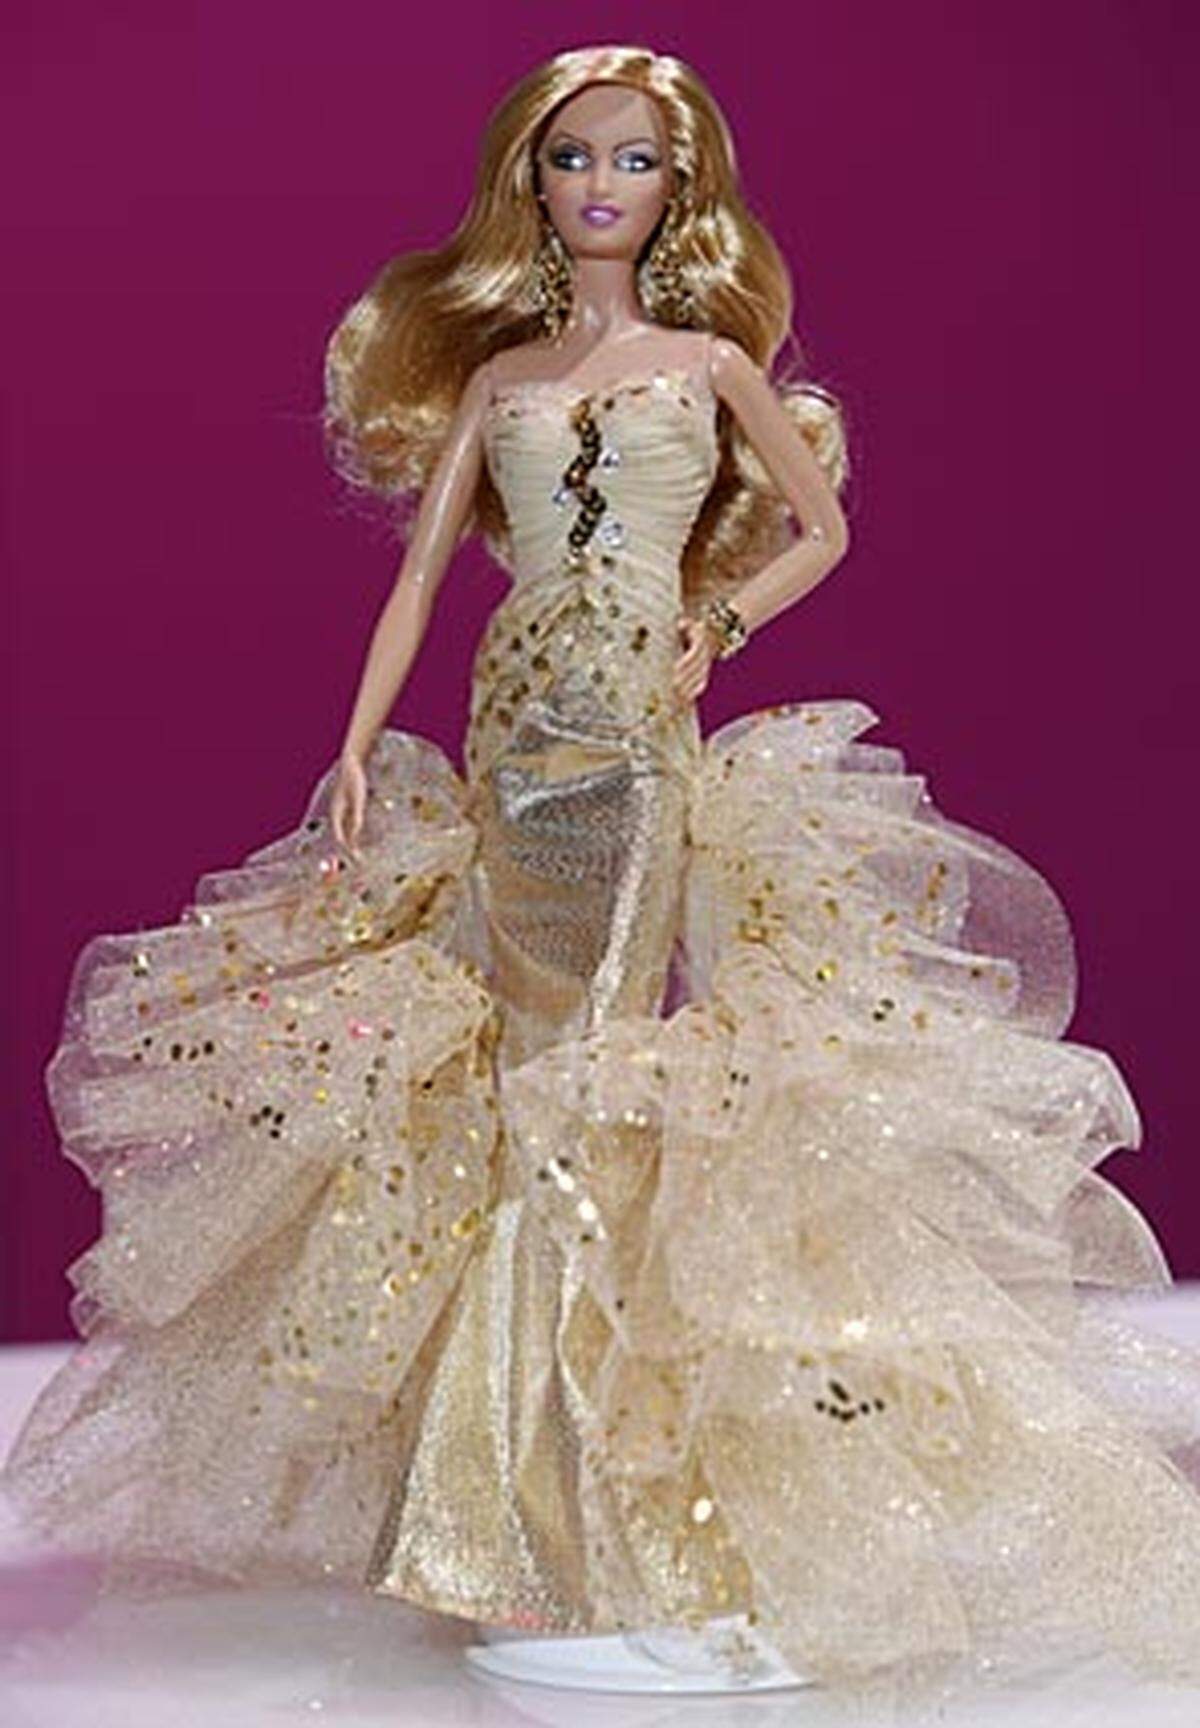 Ihre "Mutter" Ruth Handler stellte die gestylte Erscheinung mit den unnatürlichen Proportionen und einer Körpergröße von 29 Zentimetern mit dem Kosenamen "Barbie" vor.